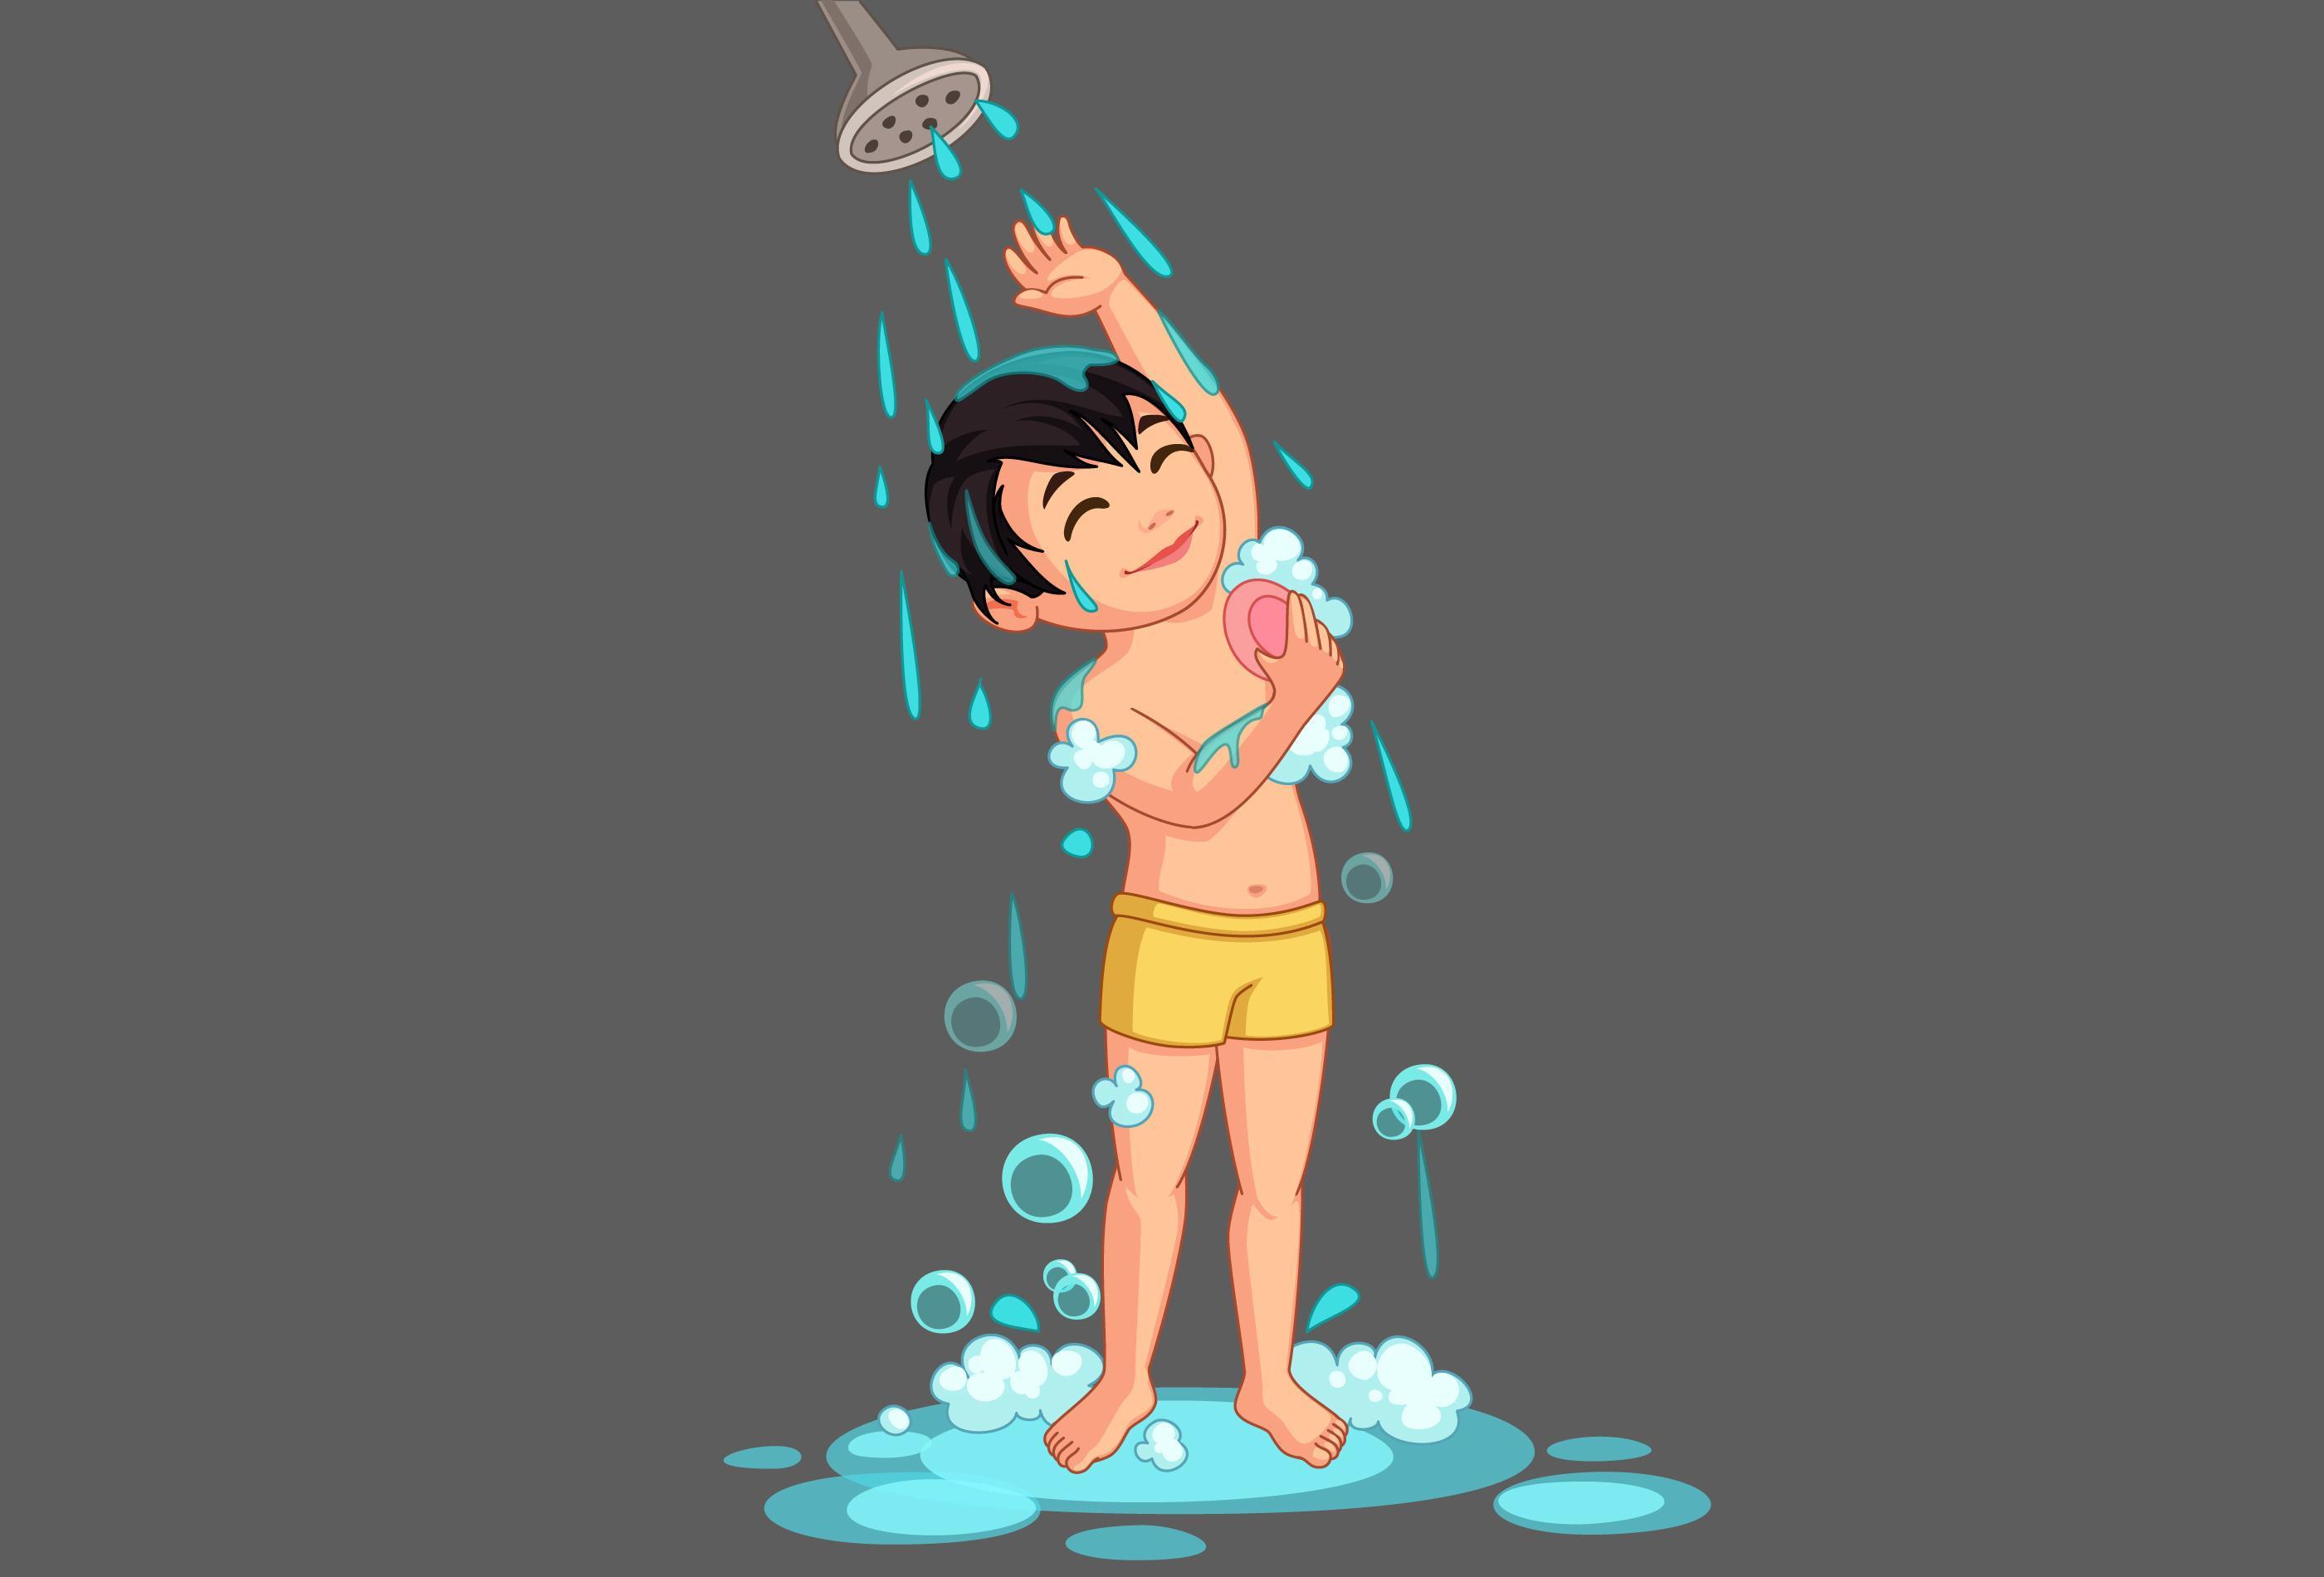 男人洗澡卡通人物平面设计图片-商业图片-正版原创图片下载购买-VEER图片库